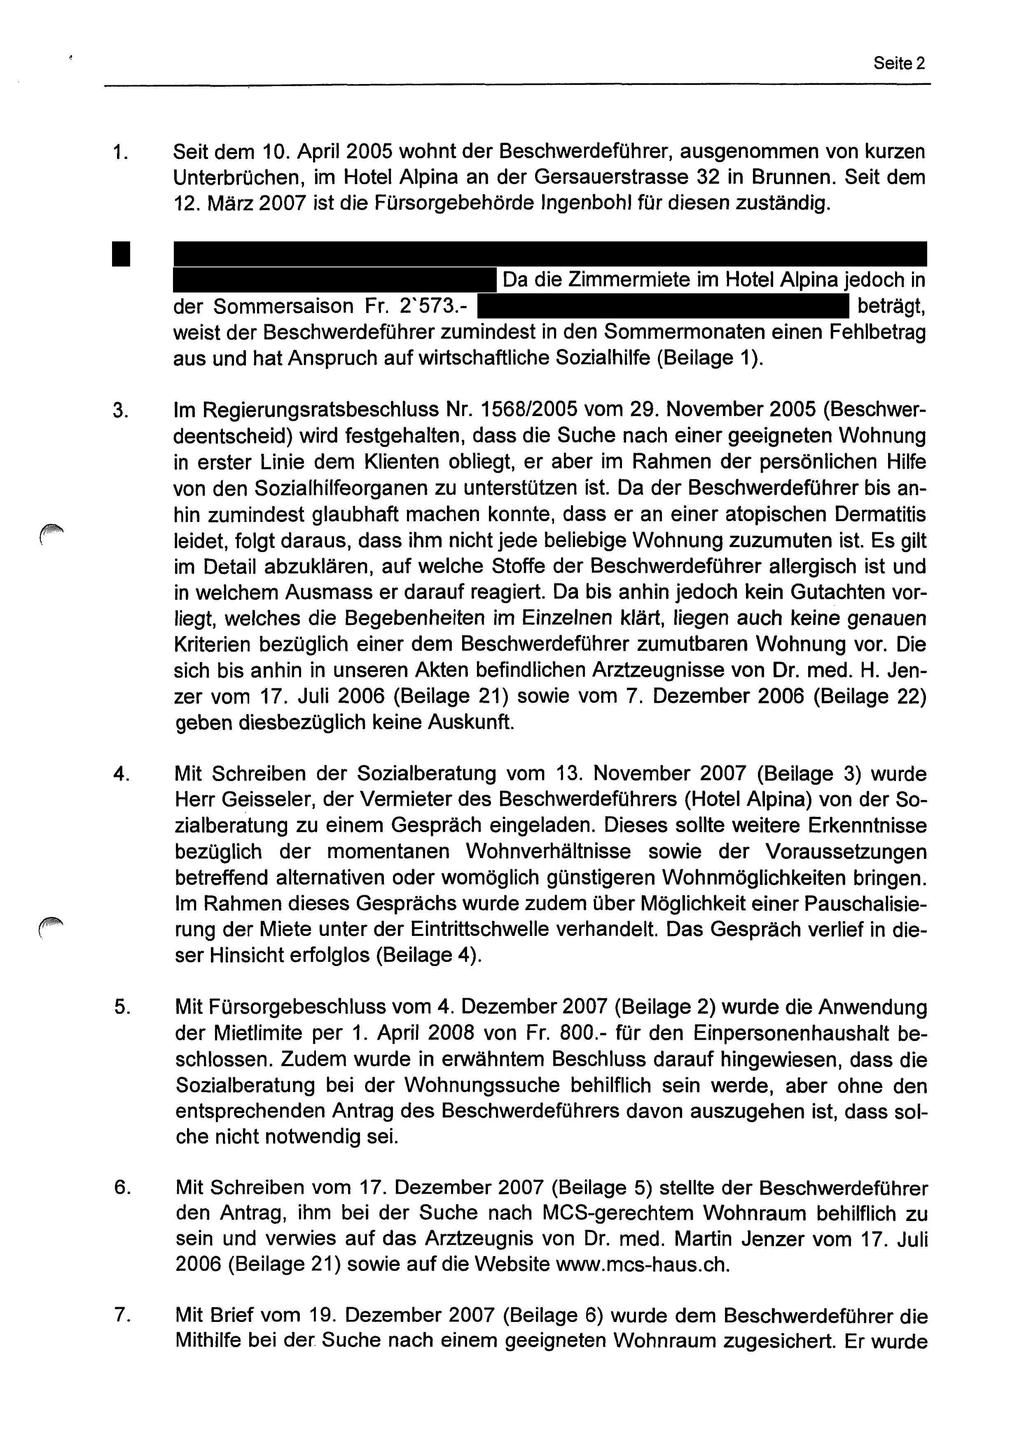 Seite 2 1. Seit dem 10. April 2005 wohnt der Beschwerdeführer, ausgenommen von kurzen Unterbrüchen, im Hotel Alpina an der Gersauerstrasse 32 in Brunnen. Seit dem 12.